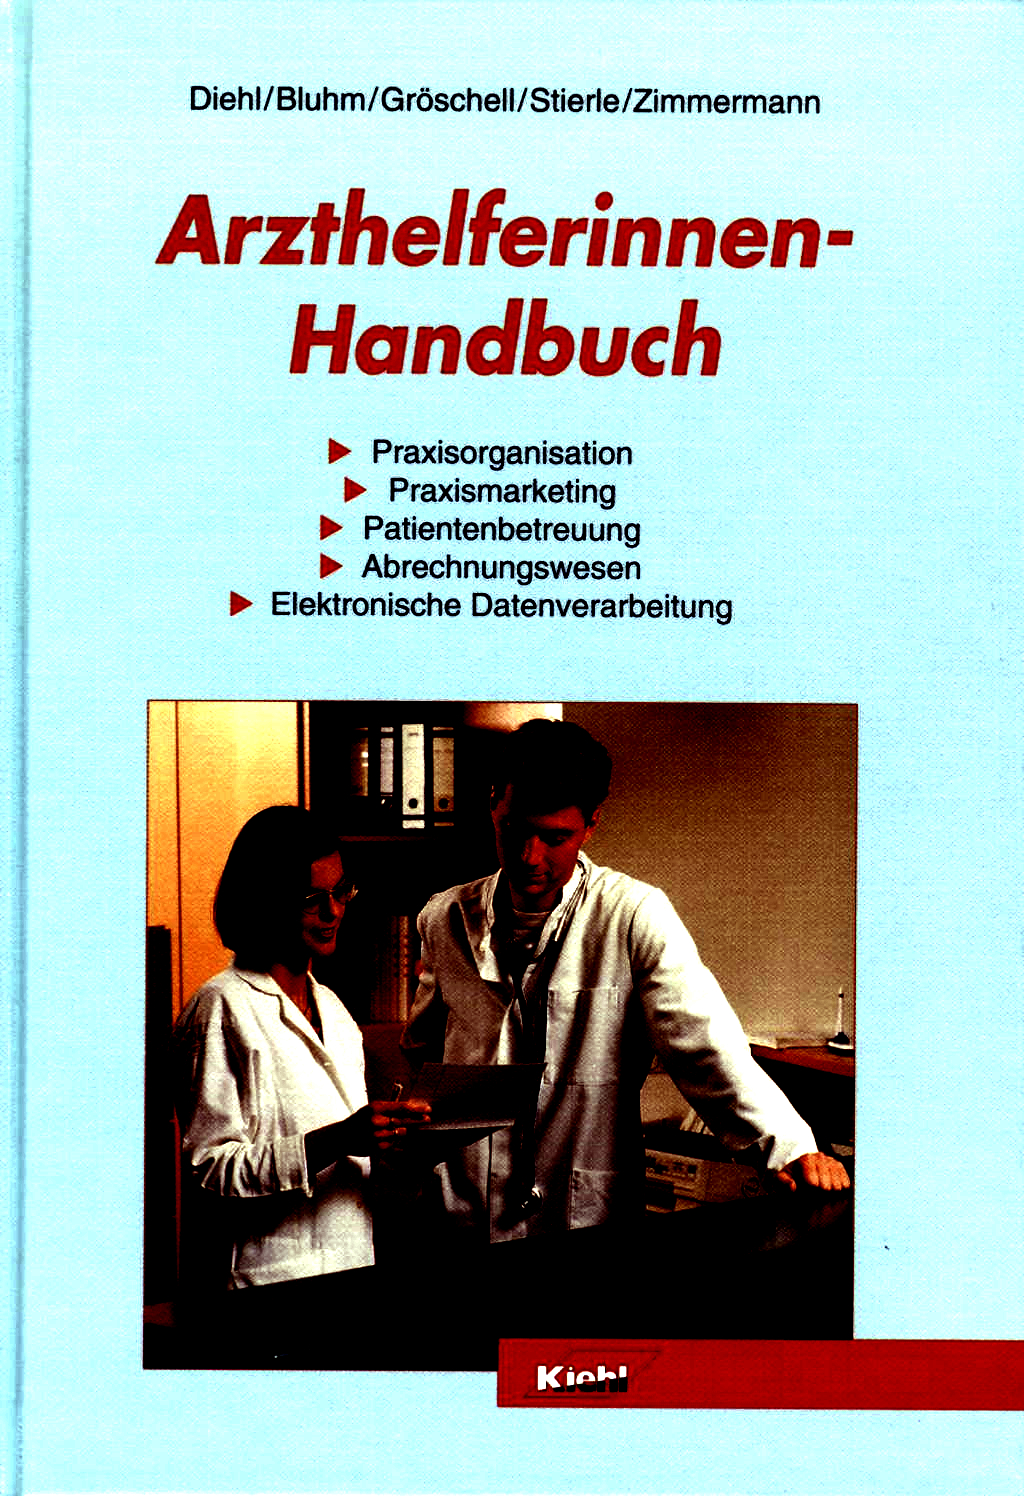 Arzthelferinnen-Handbuch